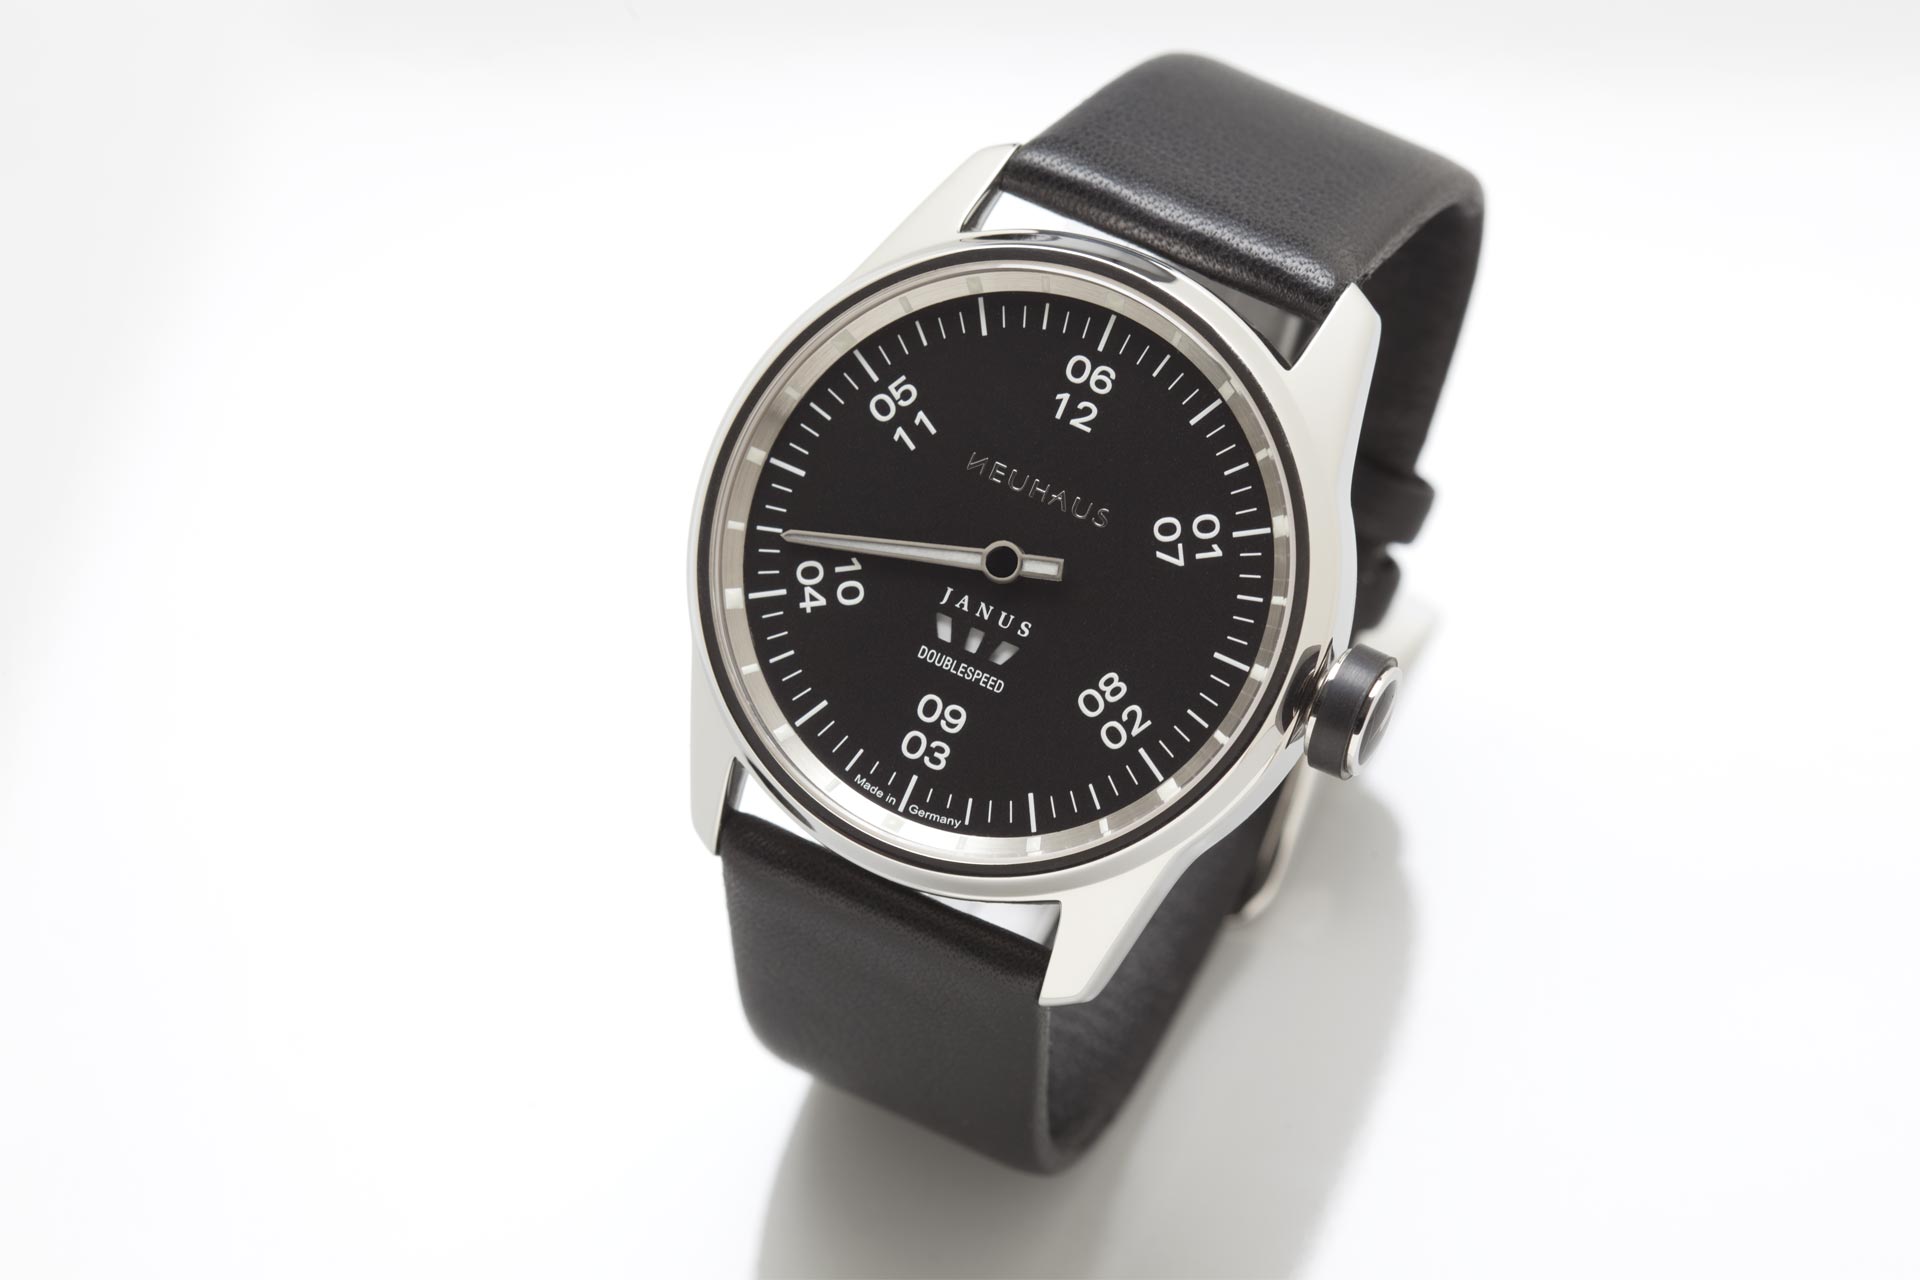 Einzeigeruhr von NEUHAUS Timepieces, Modell JANUS DoubleSpeed, mit Lederband